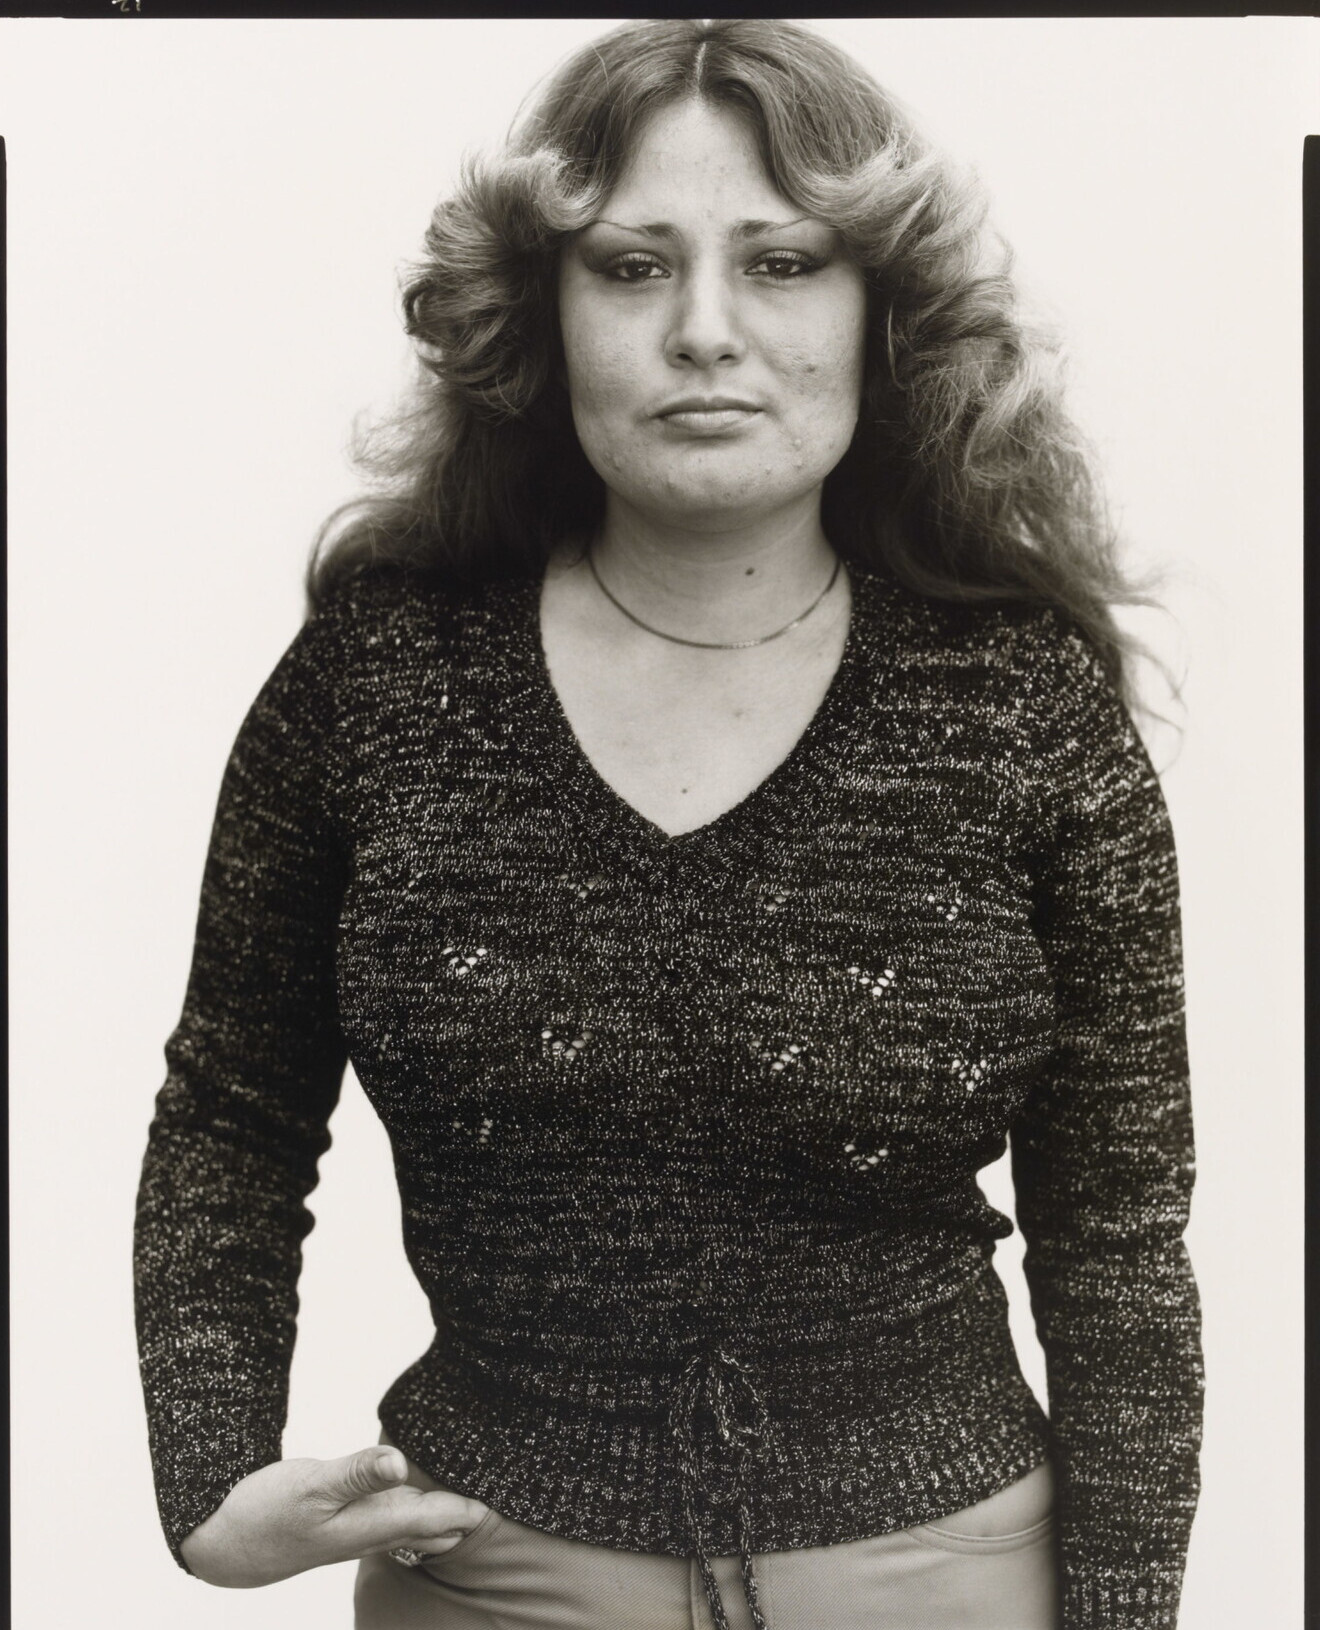 Рита Карл, студентка правоохранительных органов, Суитуотер, Техас, 10 марта 1979 г. Фотограф Ричард Аведон